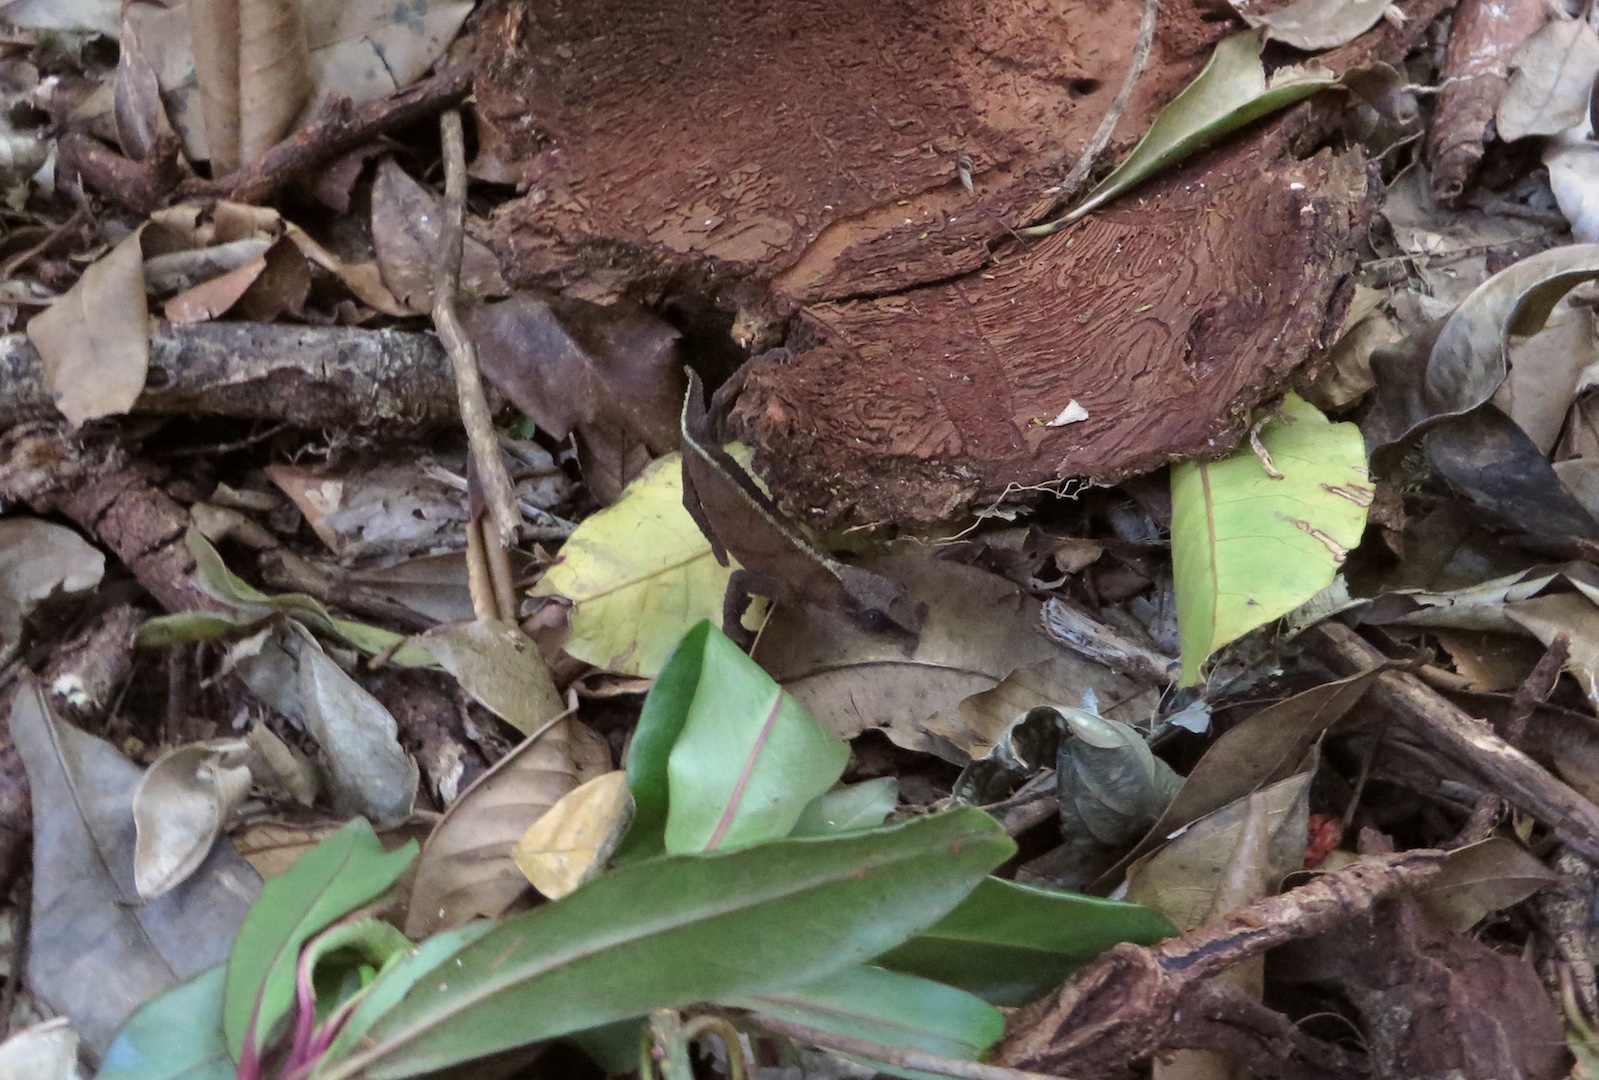 IMG_1212 - pygmy chameleon on ground